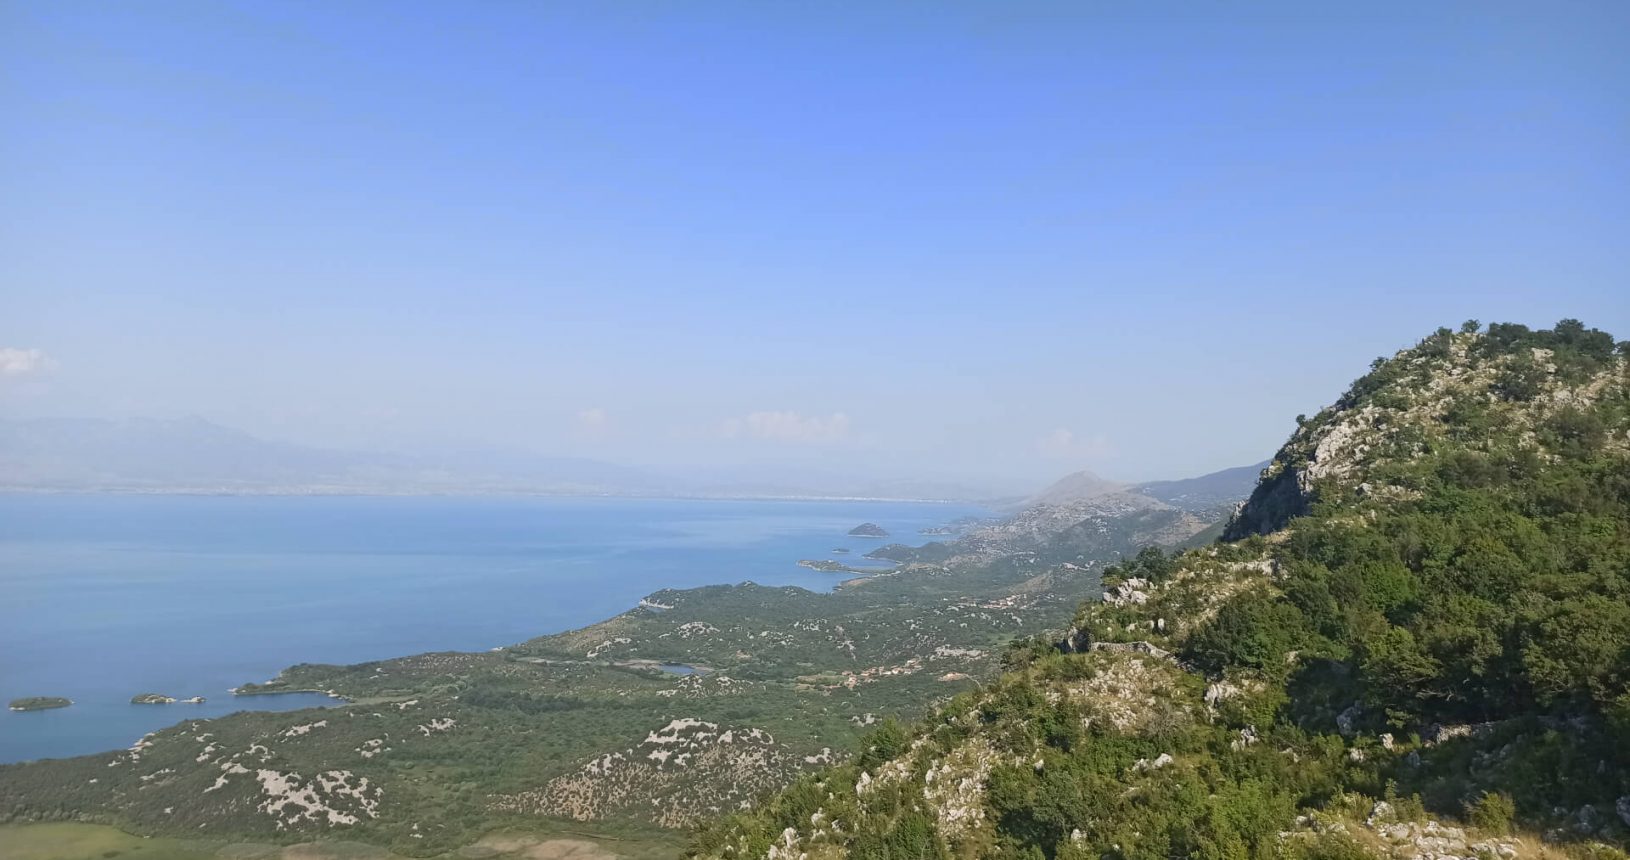 Lake and hills. Viewpoint Livari